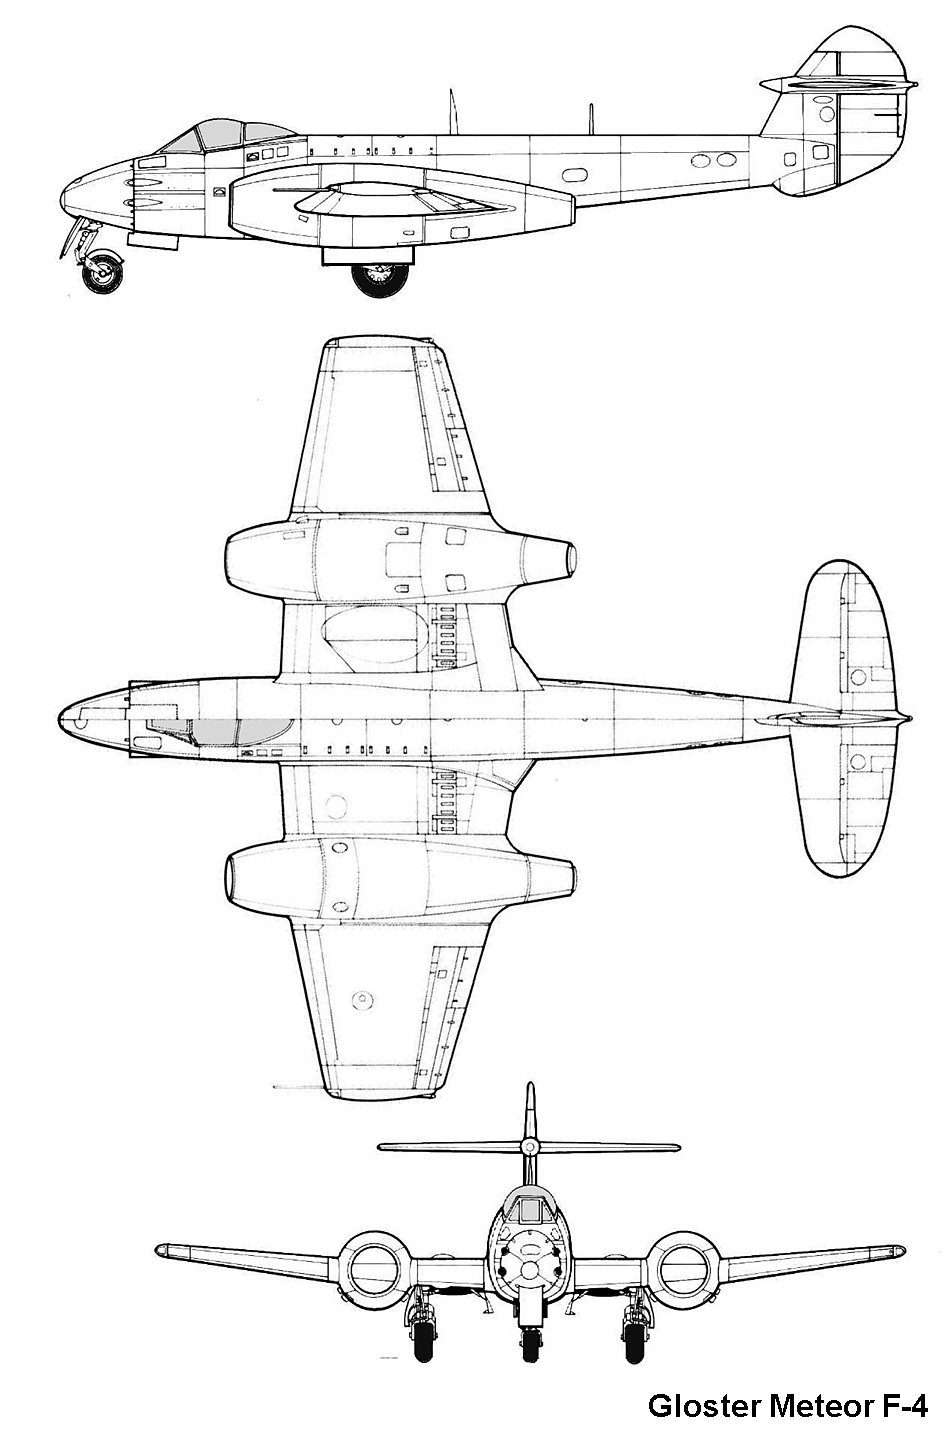 ج - 1 جـداول وتفاصيل وإحصائيات غـارات ألحرب الجوية  والهجمات الأرضية علي بـورسـعـيـد 1956 Meteorf4_3v